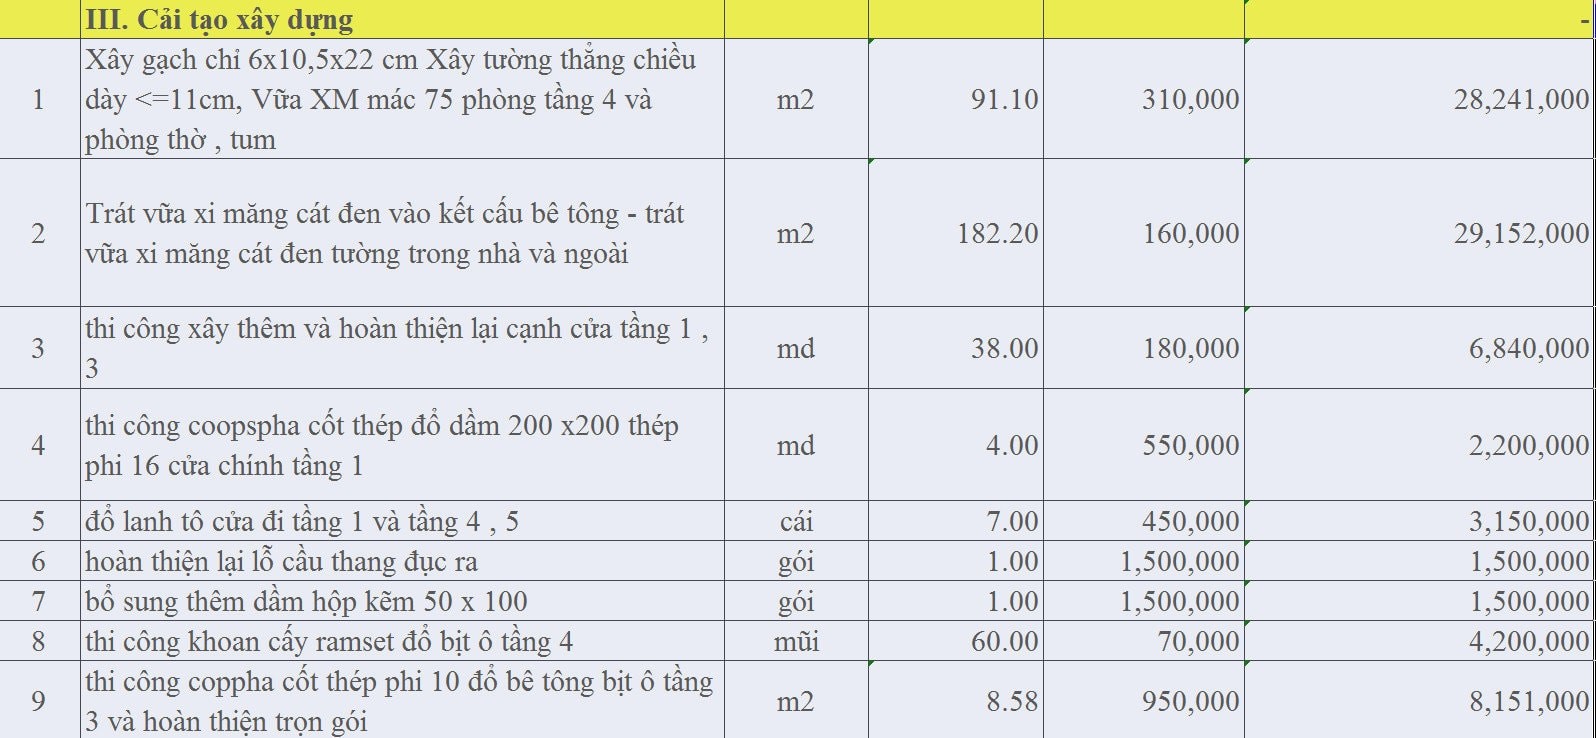 Bảng giá cải tạo nhà trọn gói của Xây Dựng Trúc Nghinh Phong